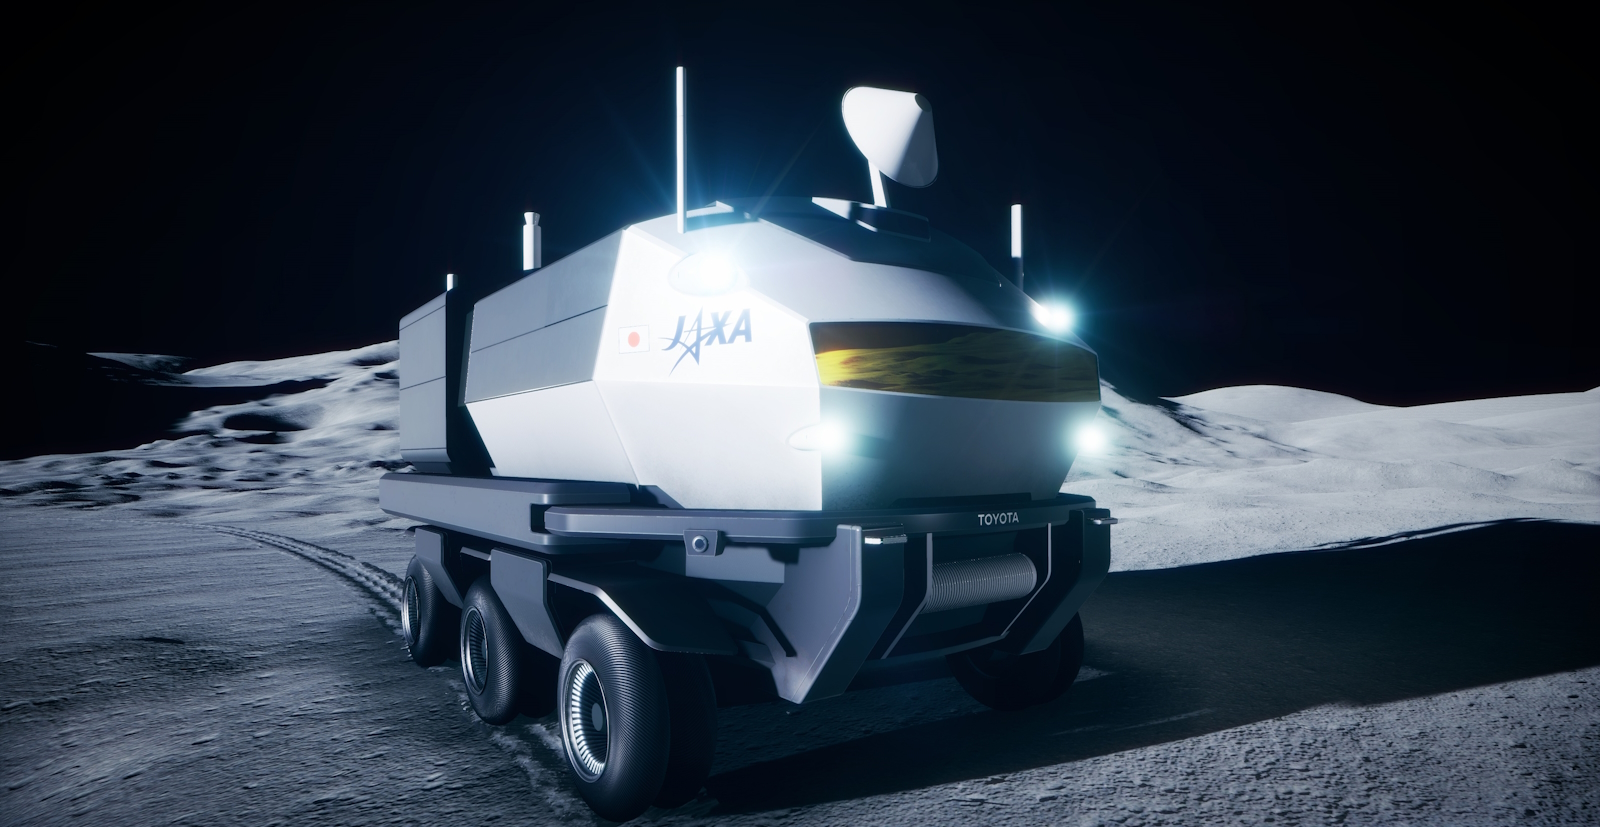 Le rover est une sorte de camping-car prévu pour héberger deux astronautes dénués de combinaison. © Toyota